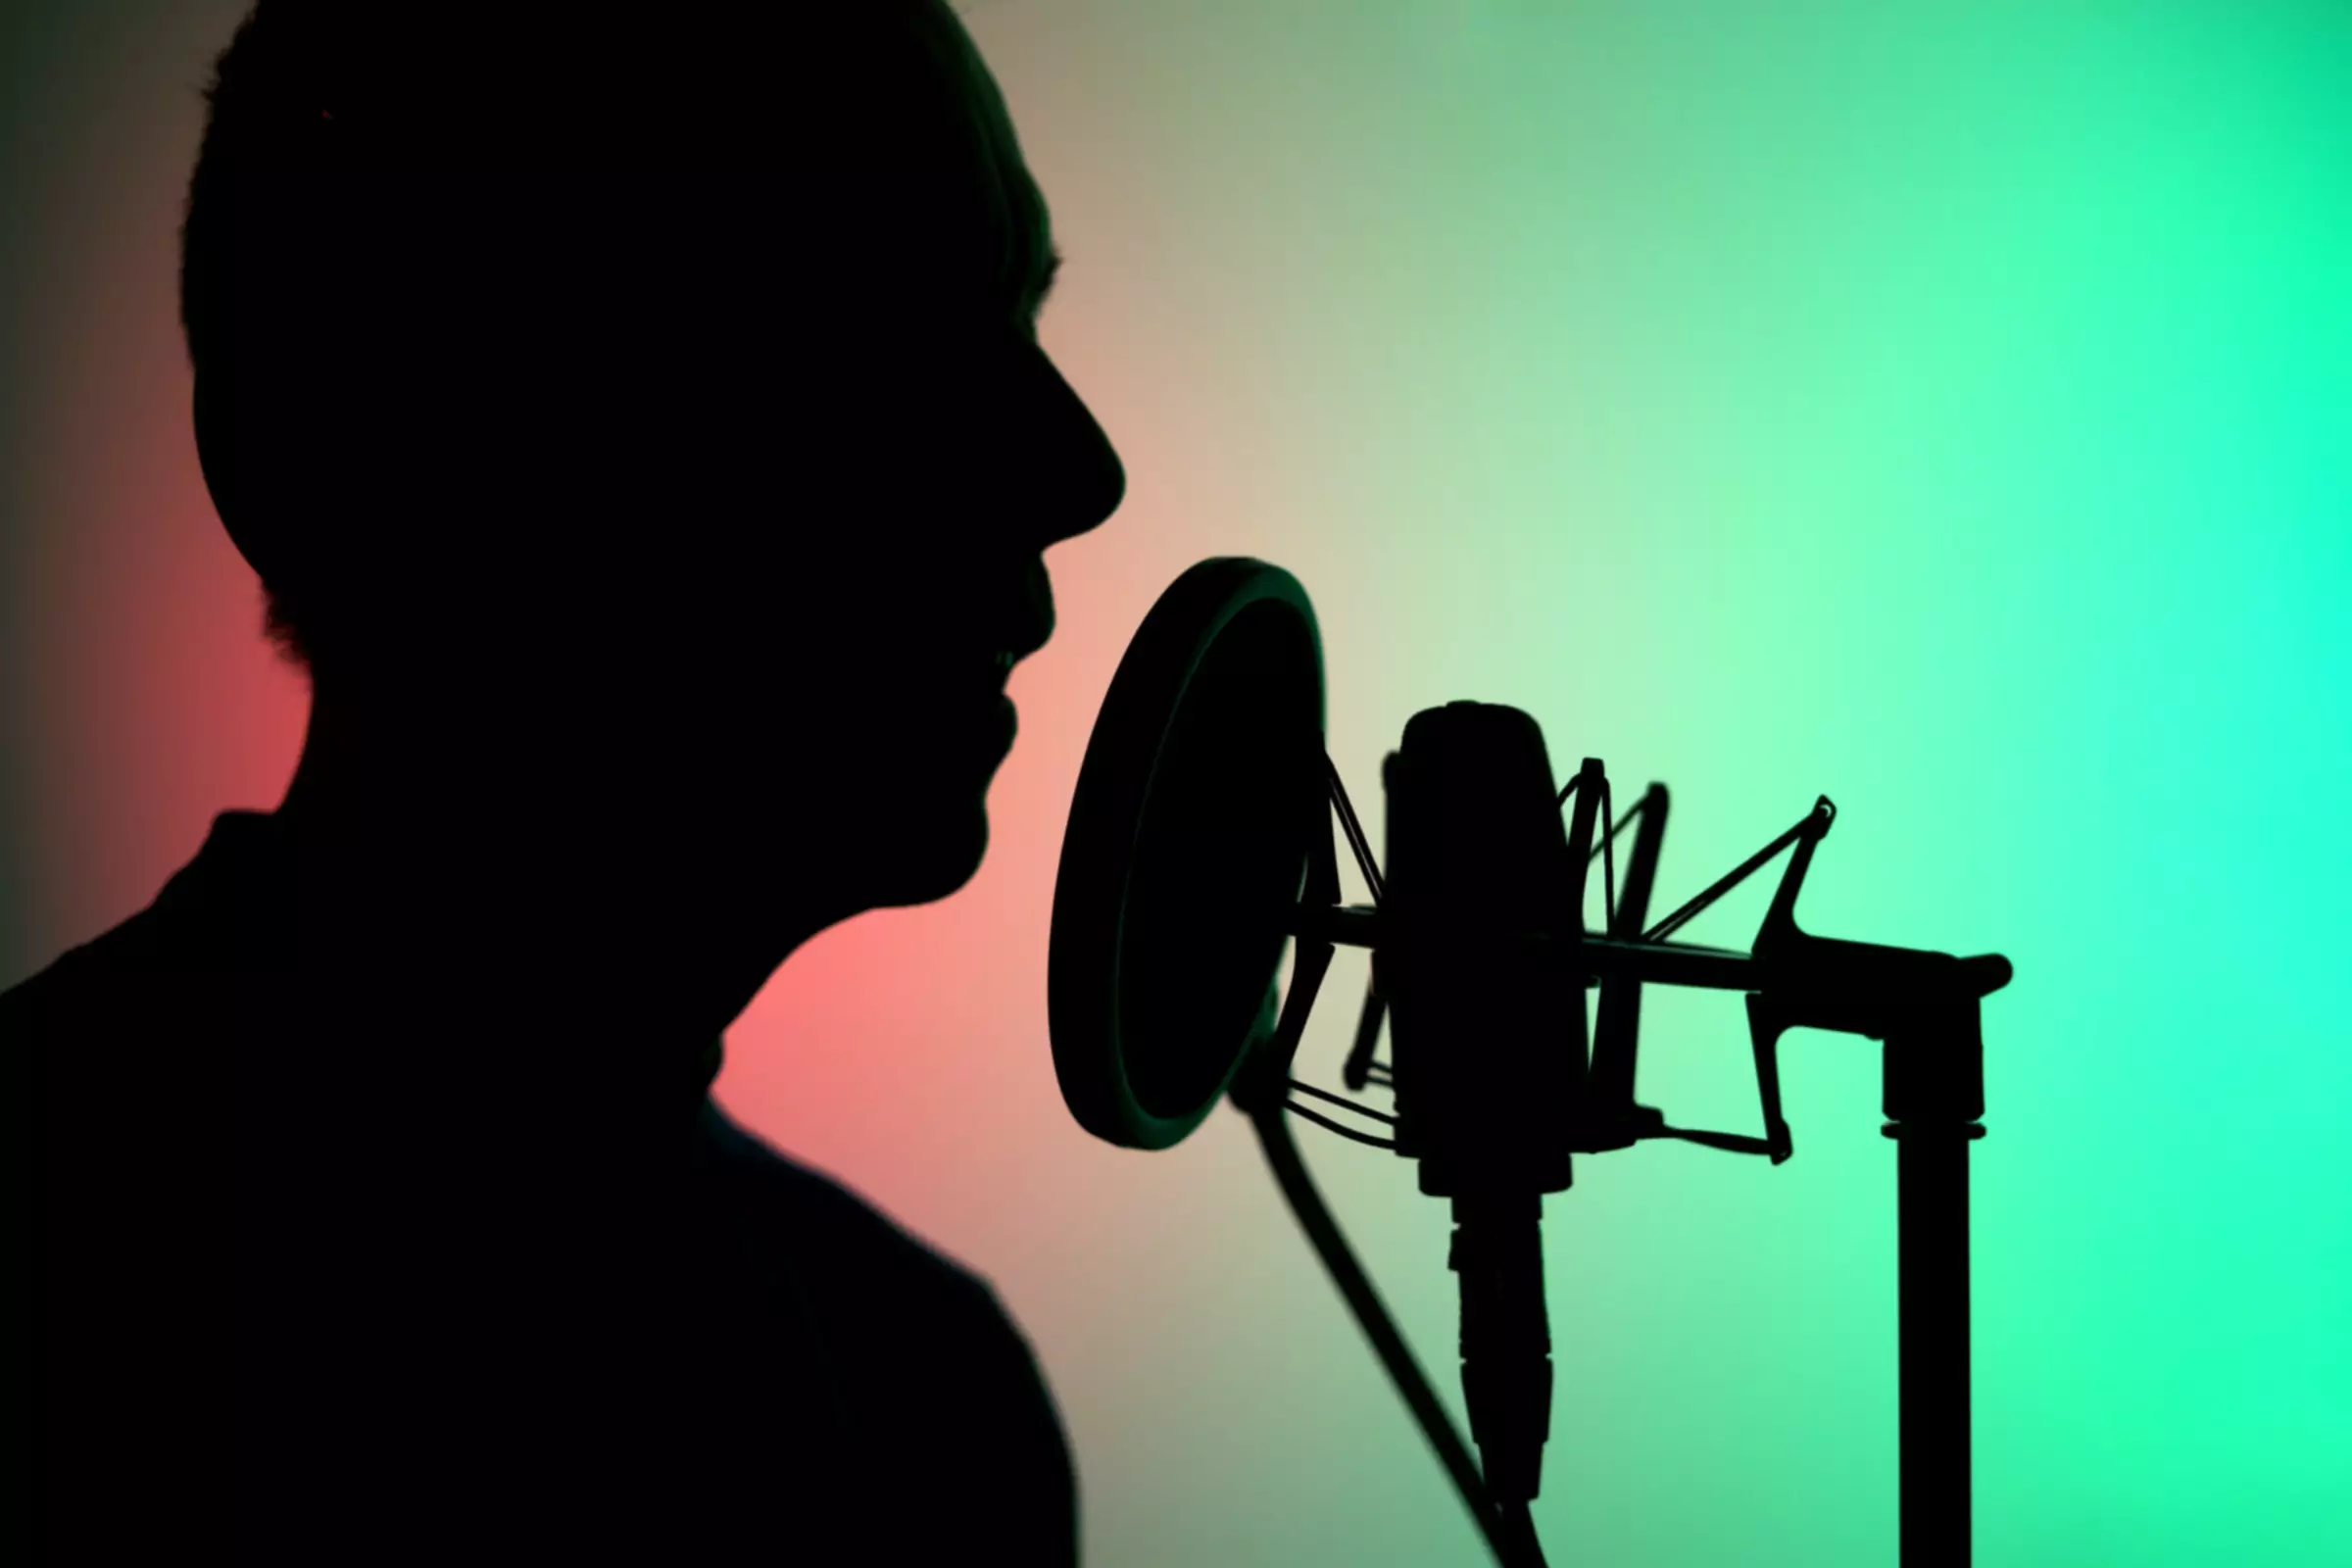 Persoană silueta vorbind în microfon studio